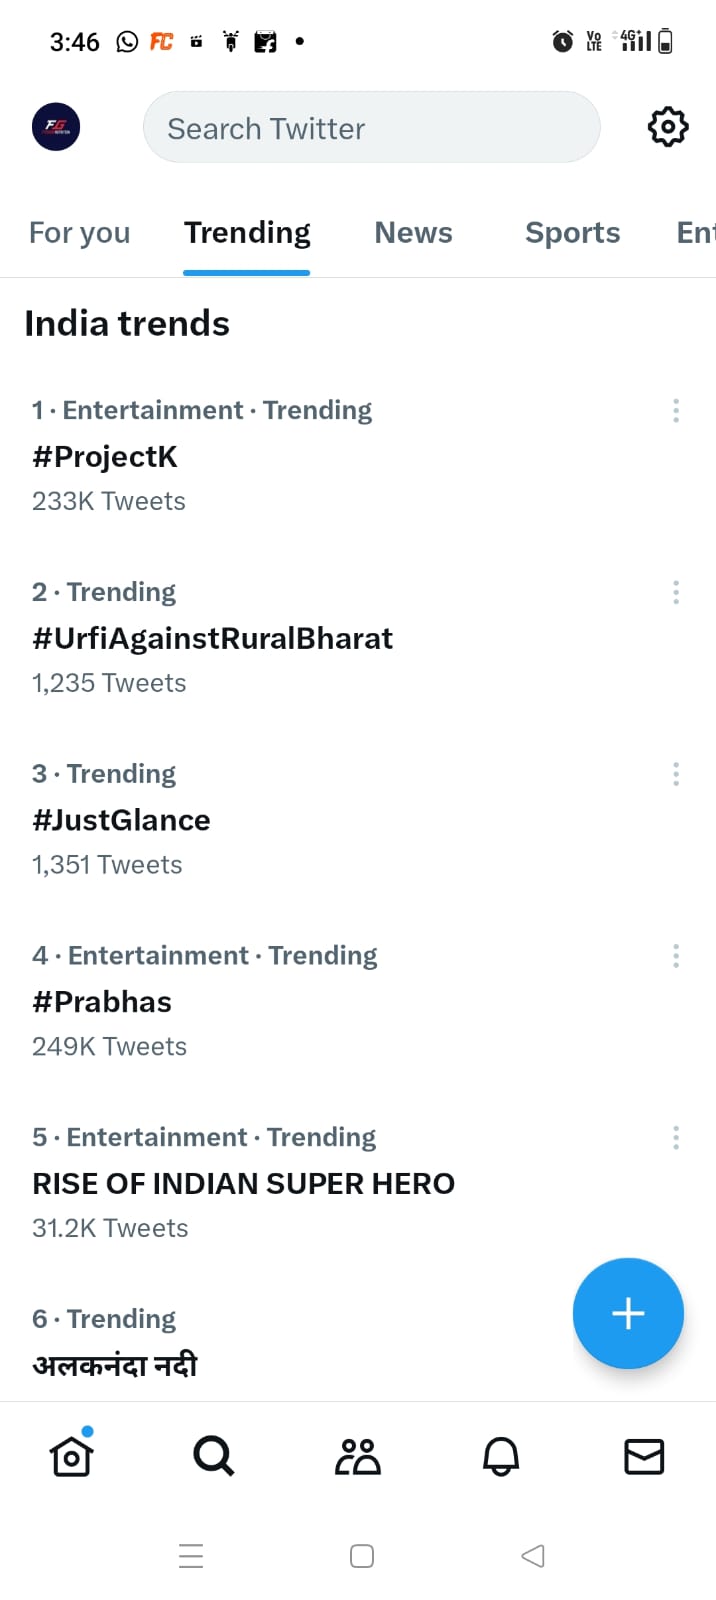 Uorfi Javed's Tweet Sparks Controversy with #UrfiAgainstRuralBharat Trend